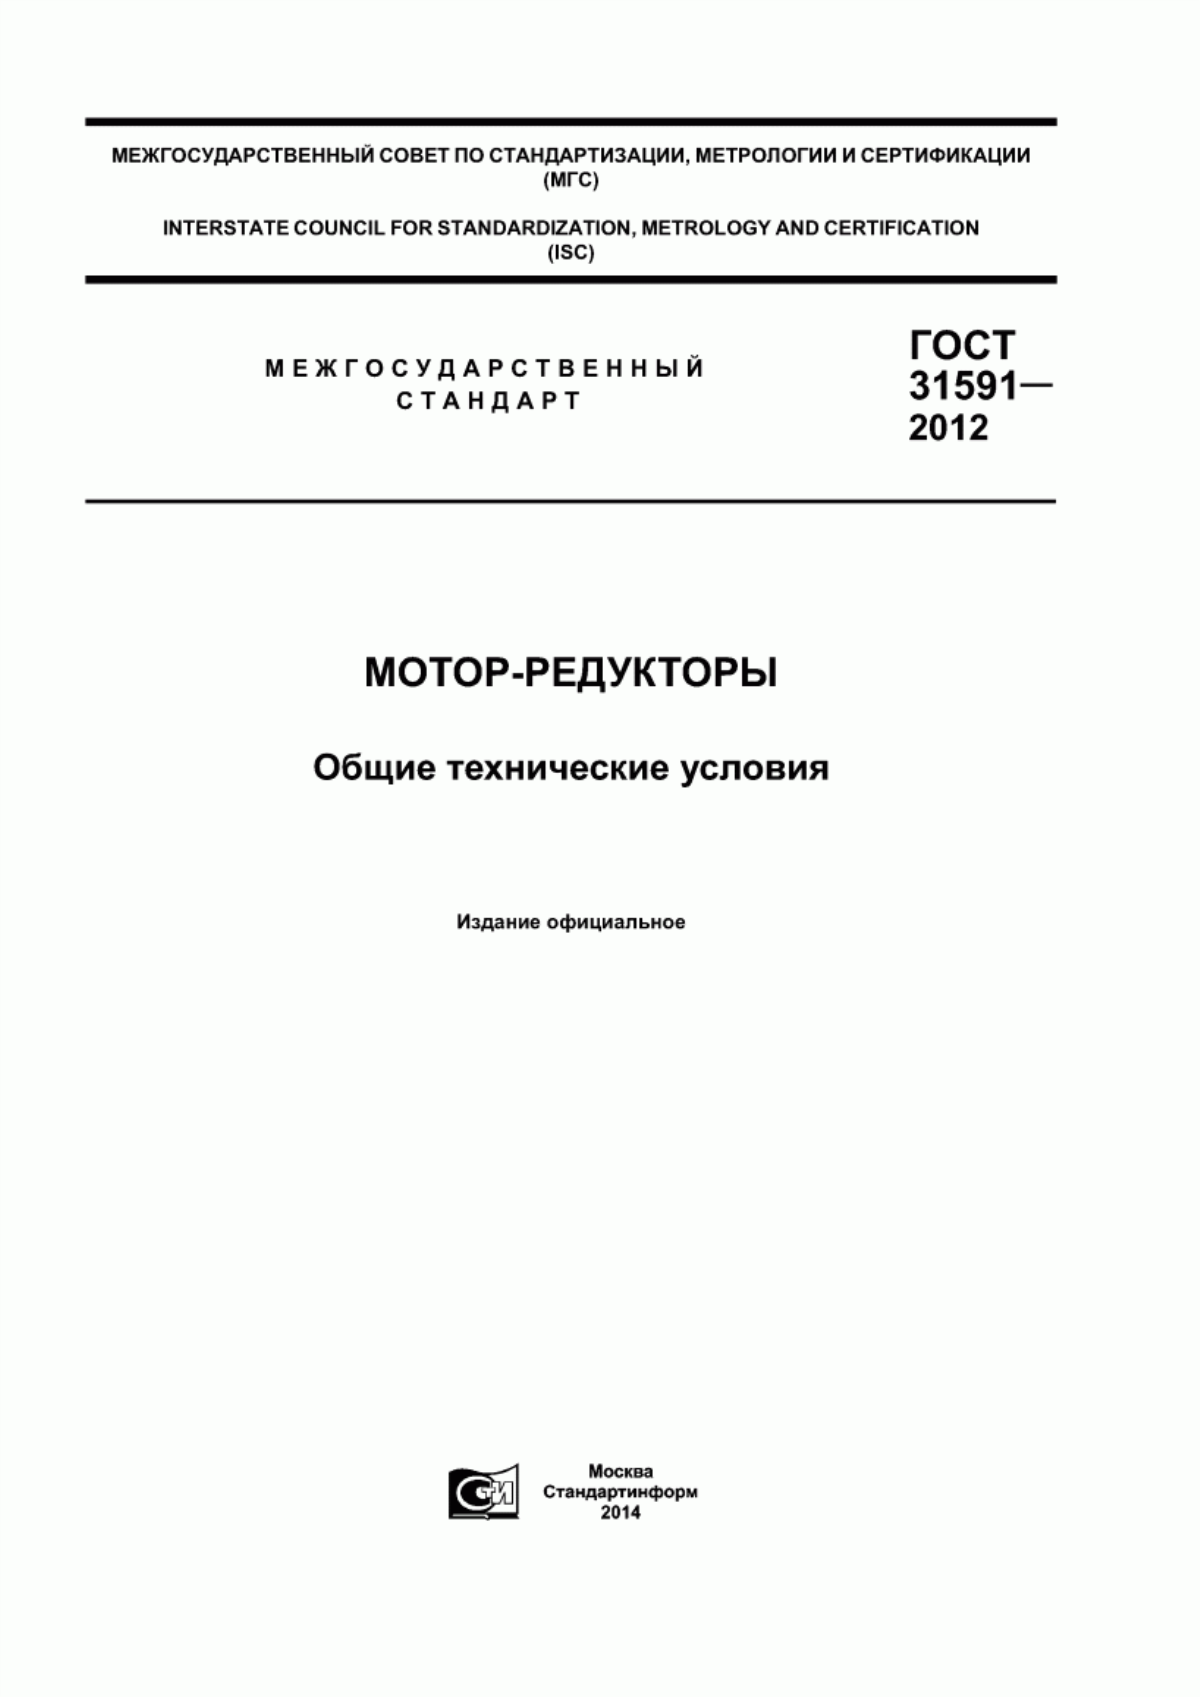 ГОСТ 31591-2012 Мотор-редукторы. Общие технические условия